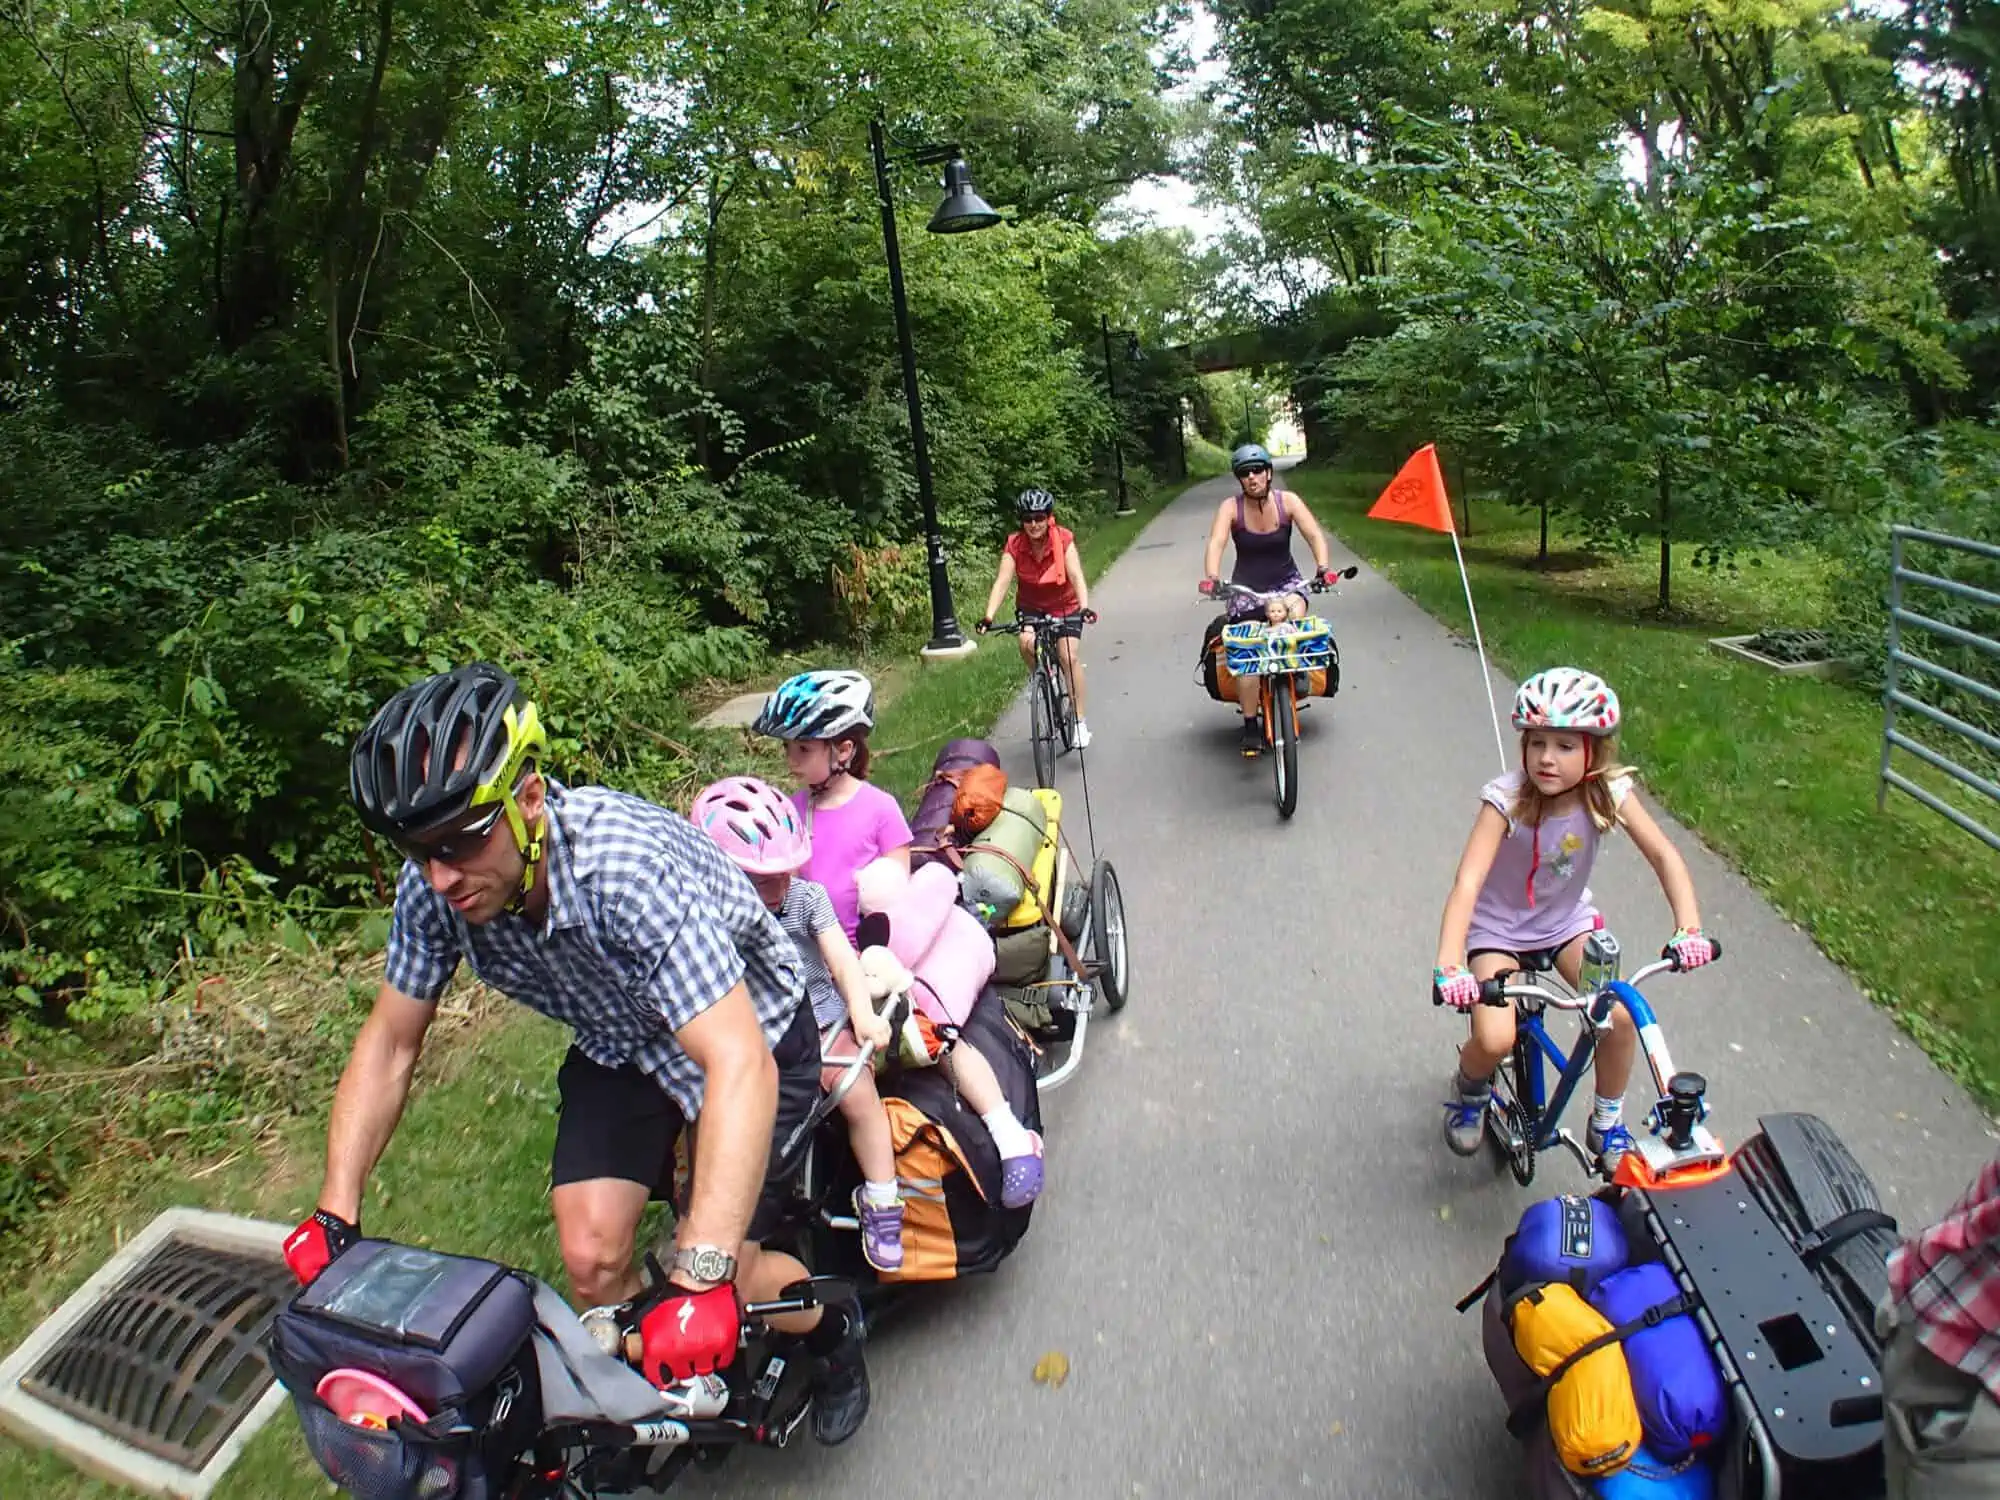 Biking with kids requires preparation